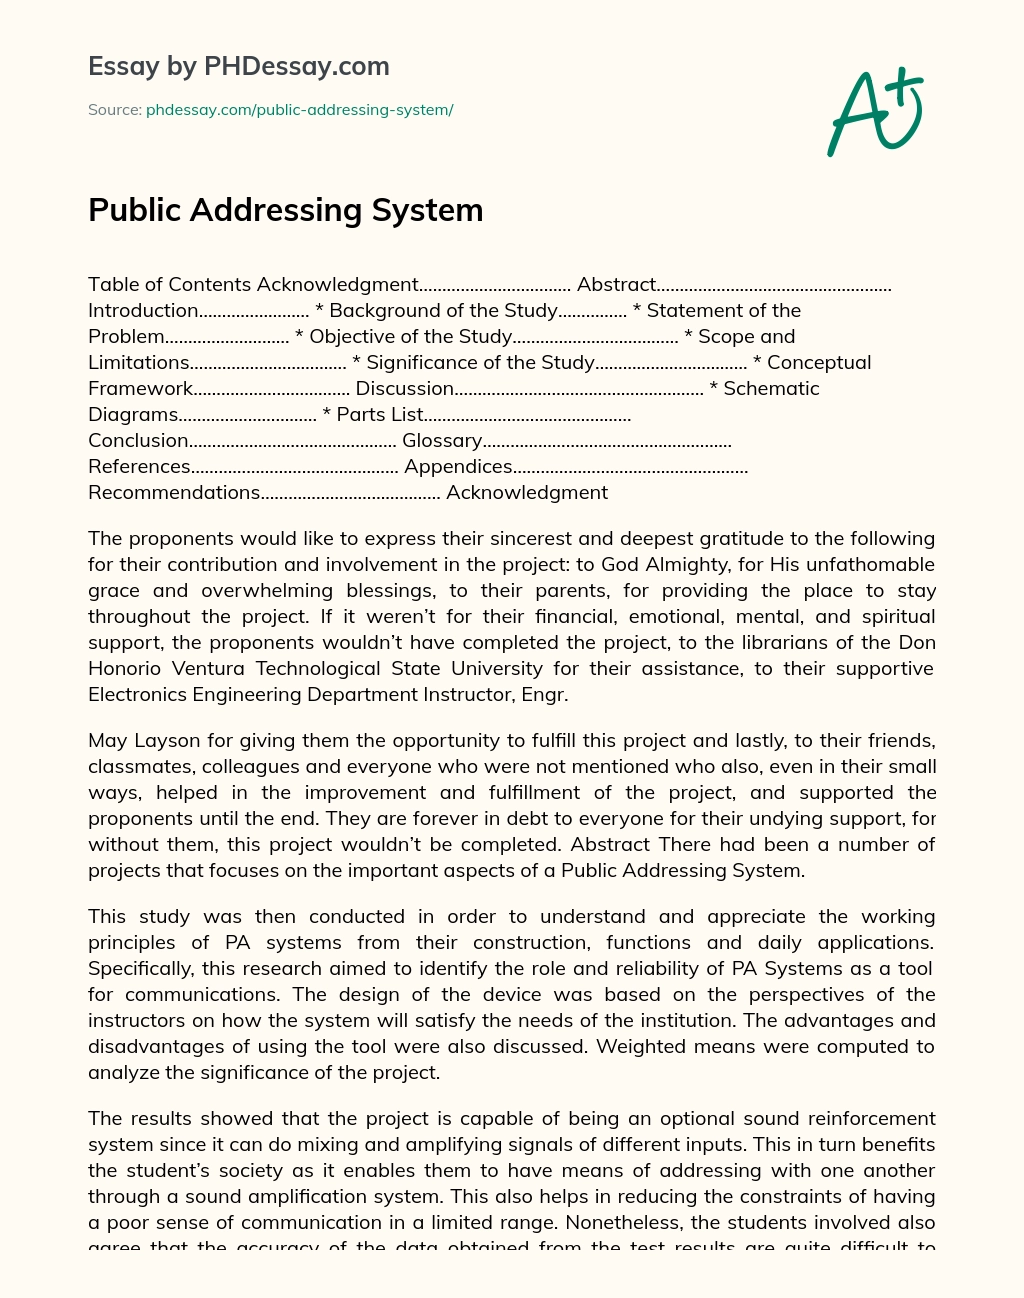 Public Addressing System essay